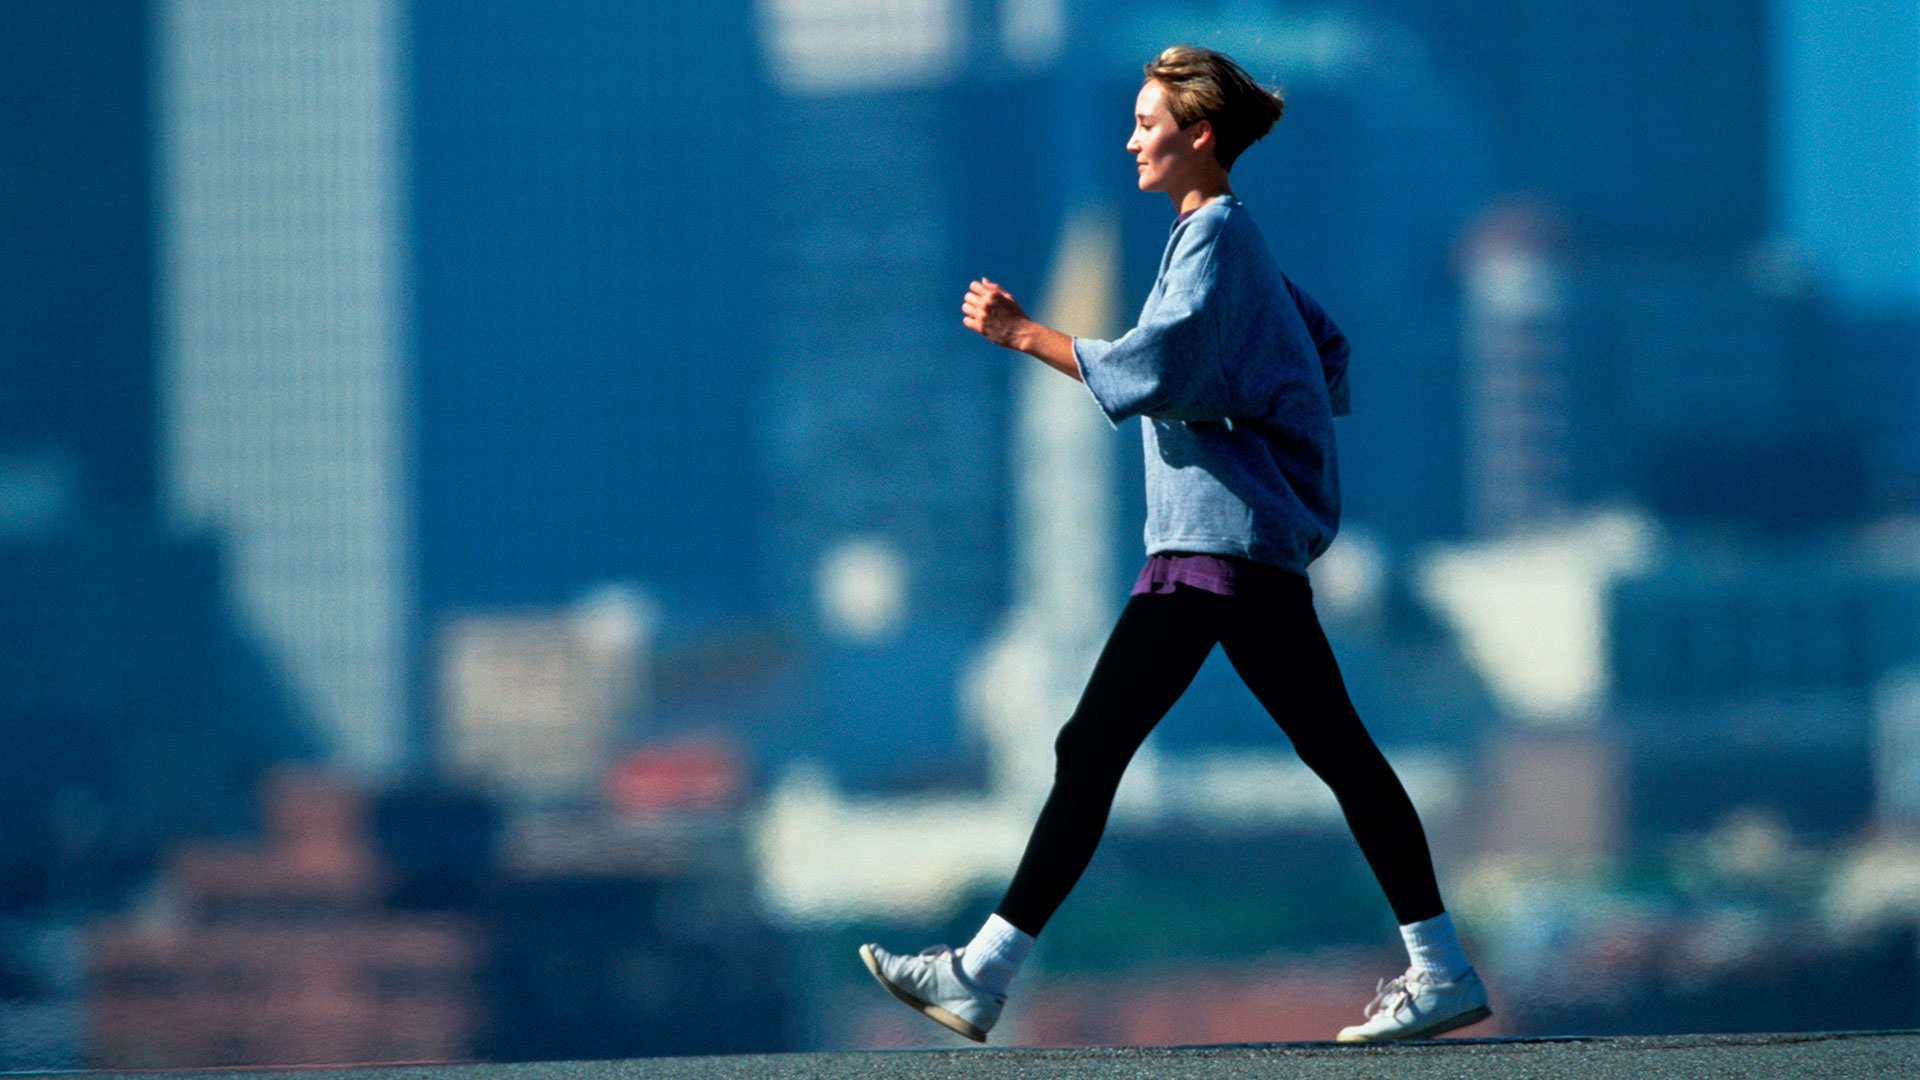 El sedentarismo y la falta de actividad física es un factor de riesgo de diabetes (Getty Images)